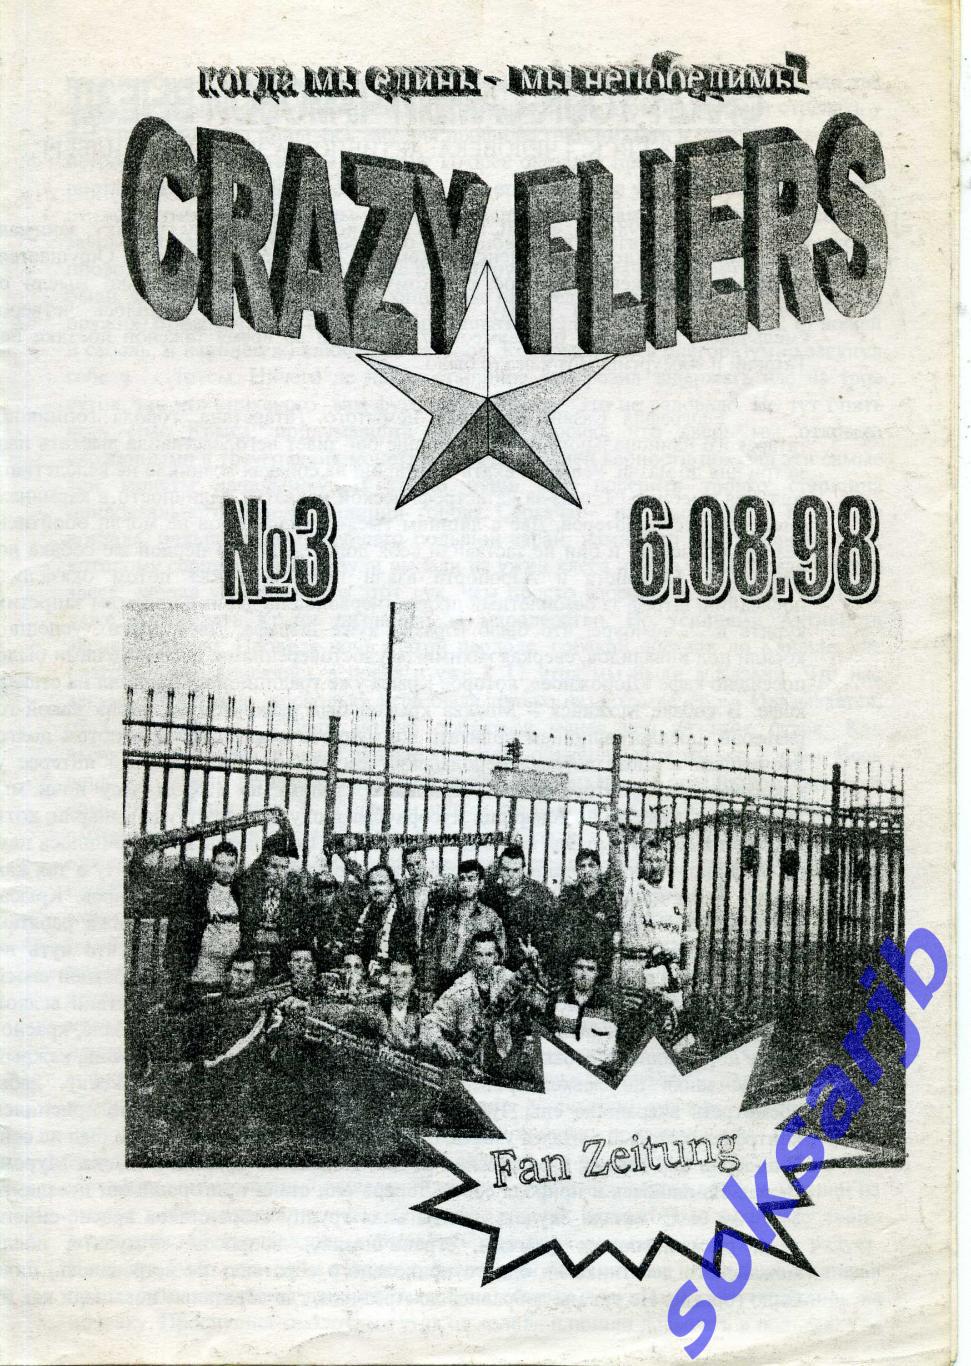 1998.08.06. Фан-вестник №3. CRAZY FLIERS. Смоленск.